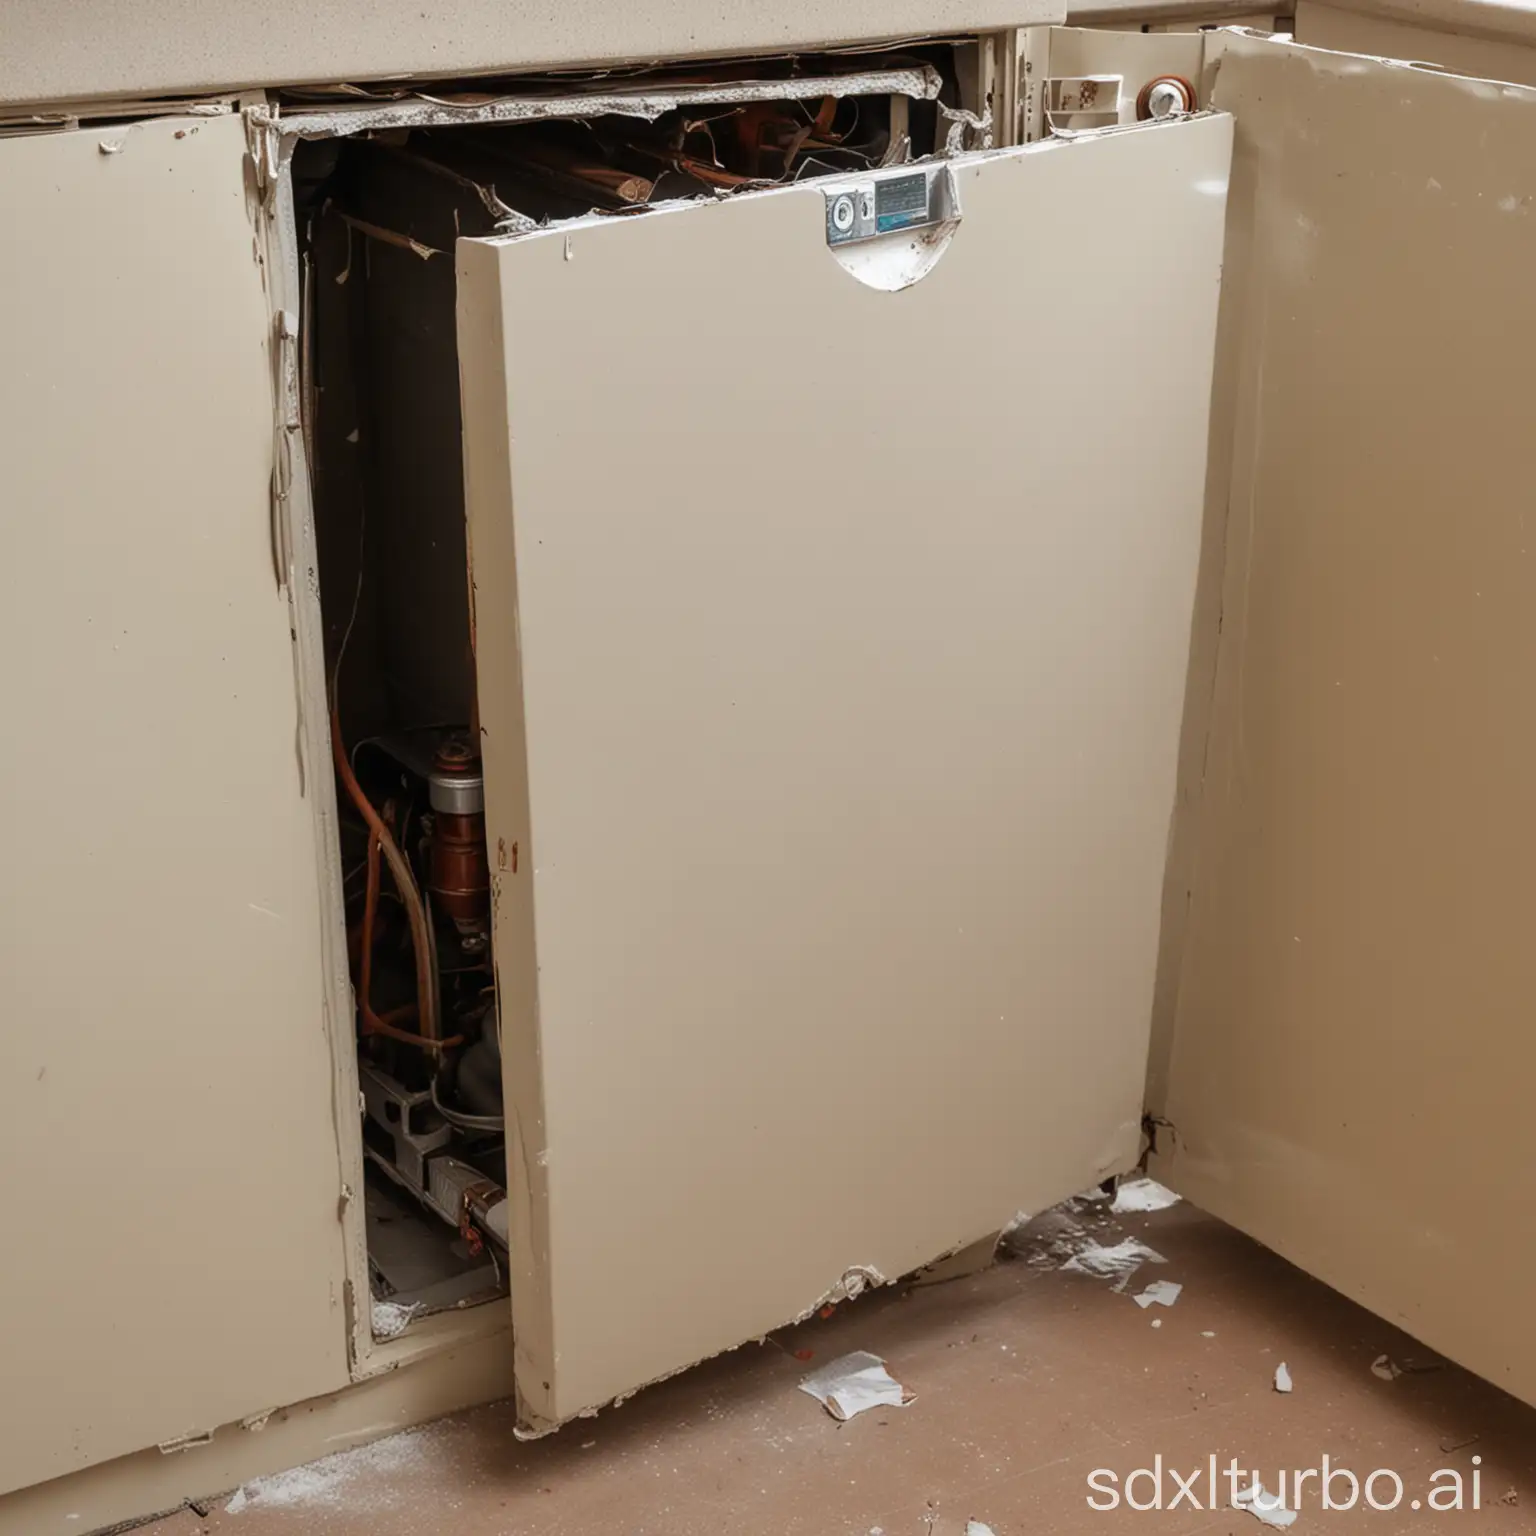 a broken boiler in a cupboard